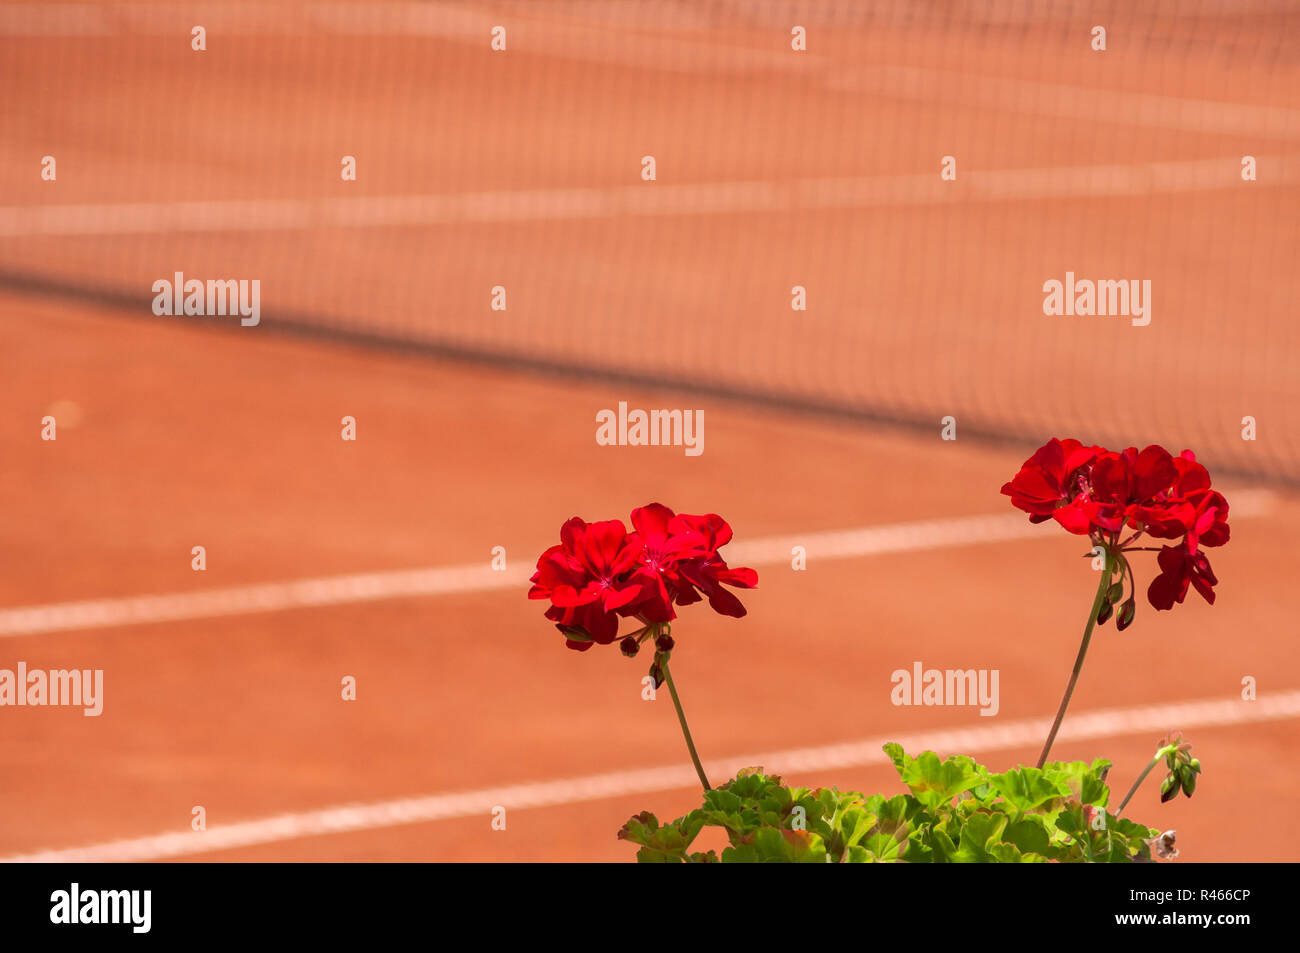 Rosso fiore di geranio closeup sul campo da tennis in argilla rossa sullo sfondo Foto Stock